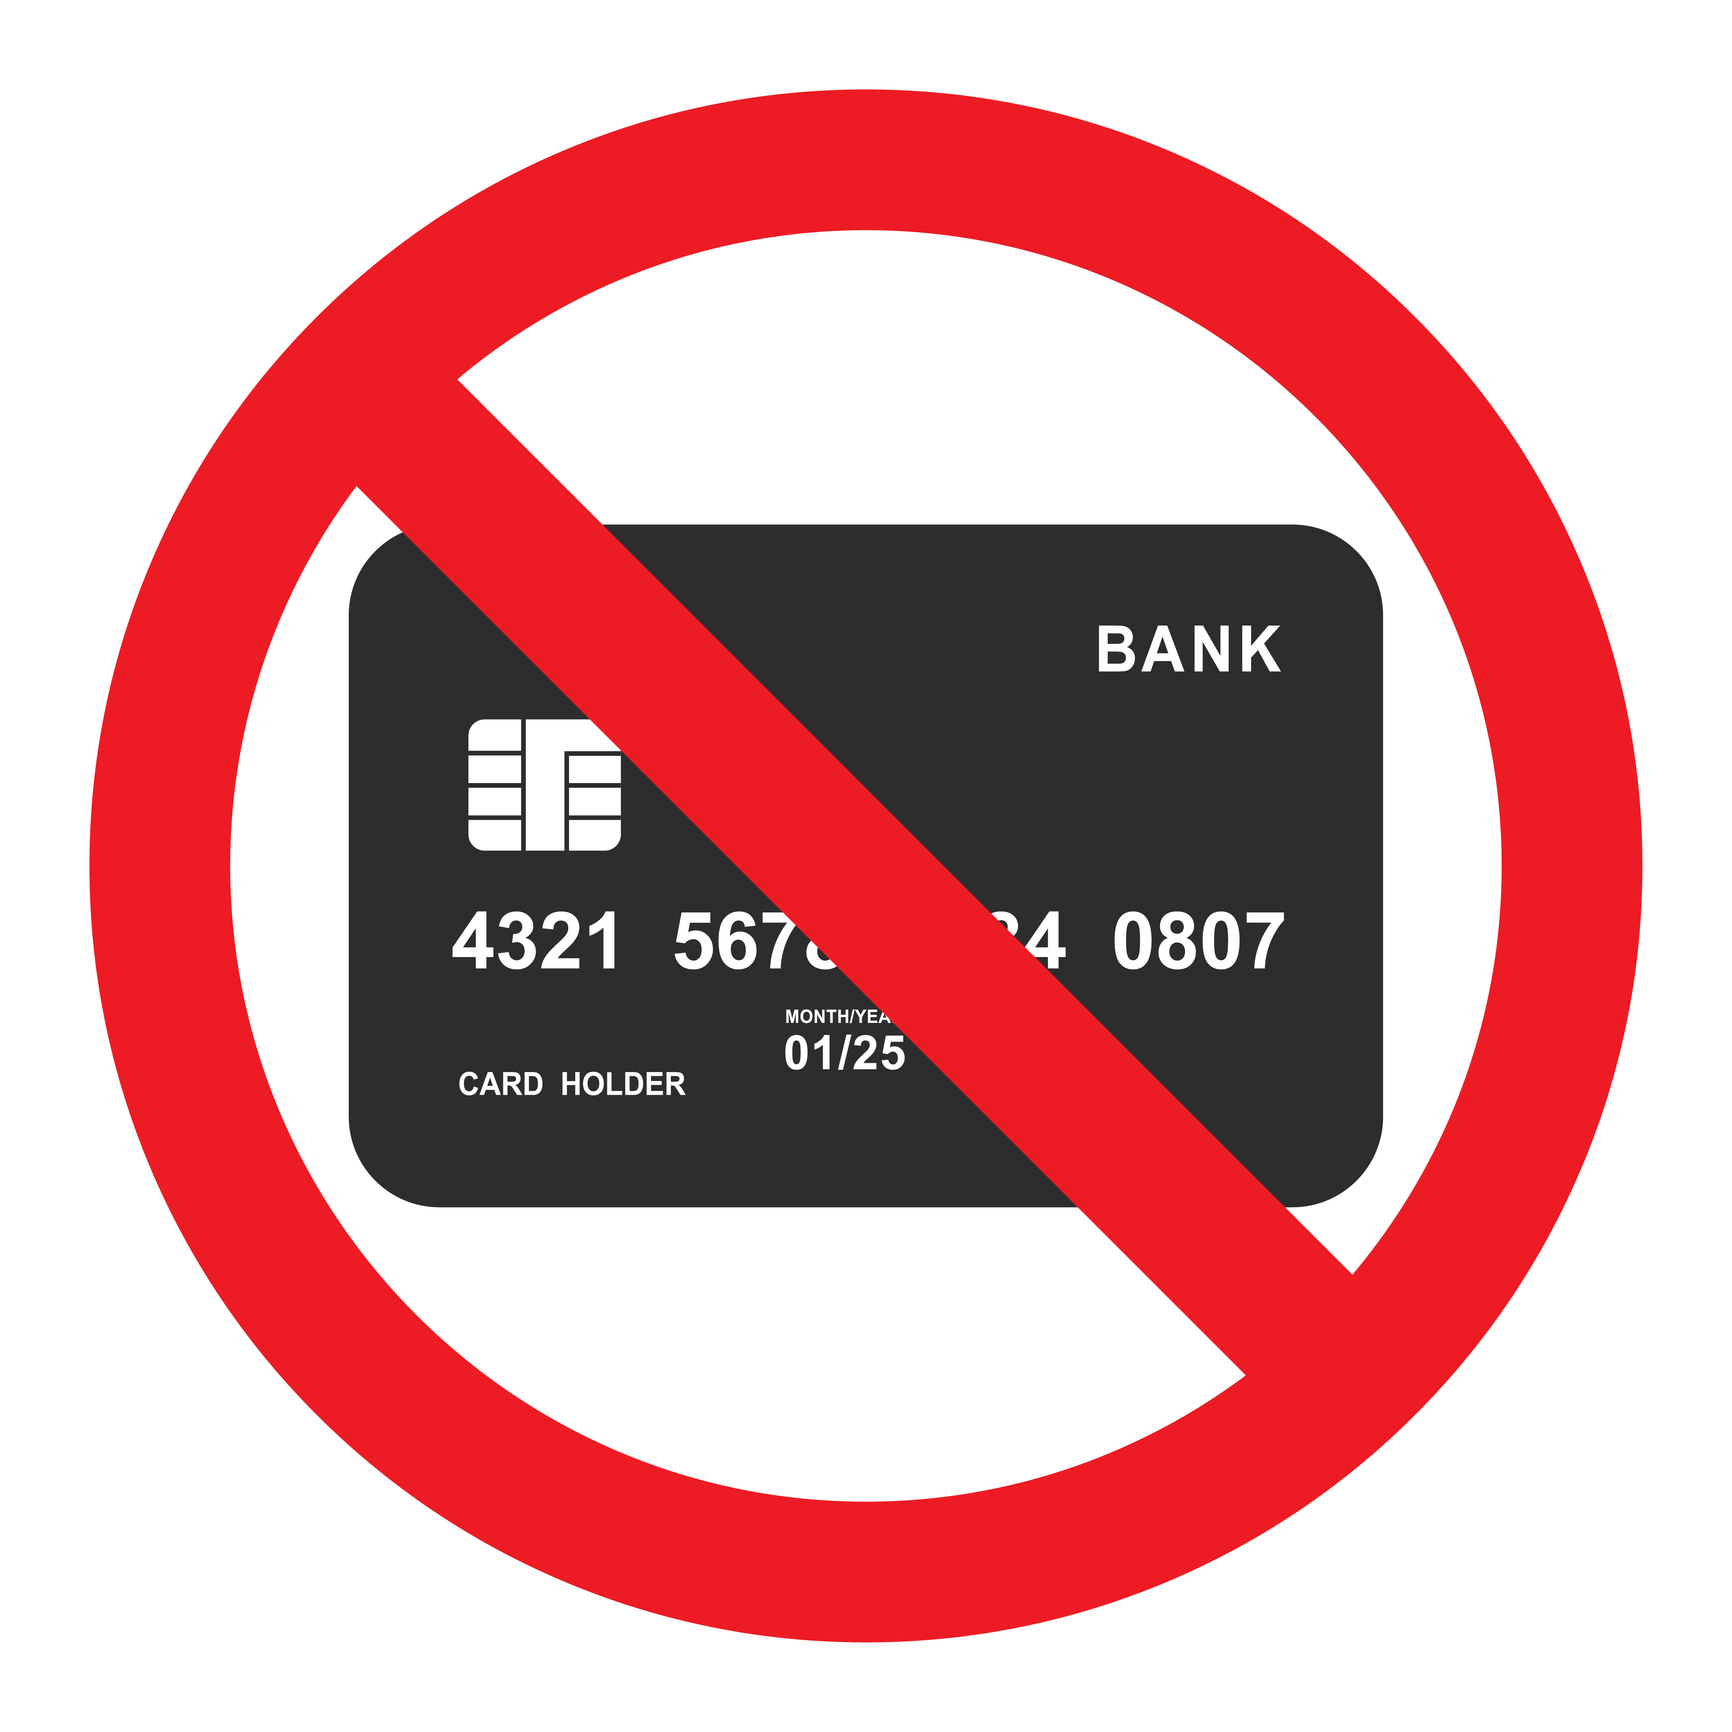 Ilustração nas cores preta e vermelha sobre fundo branco, de faixa de proibição sobre imagem de cartão de crédito.